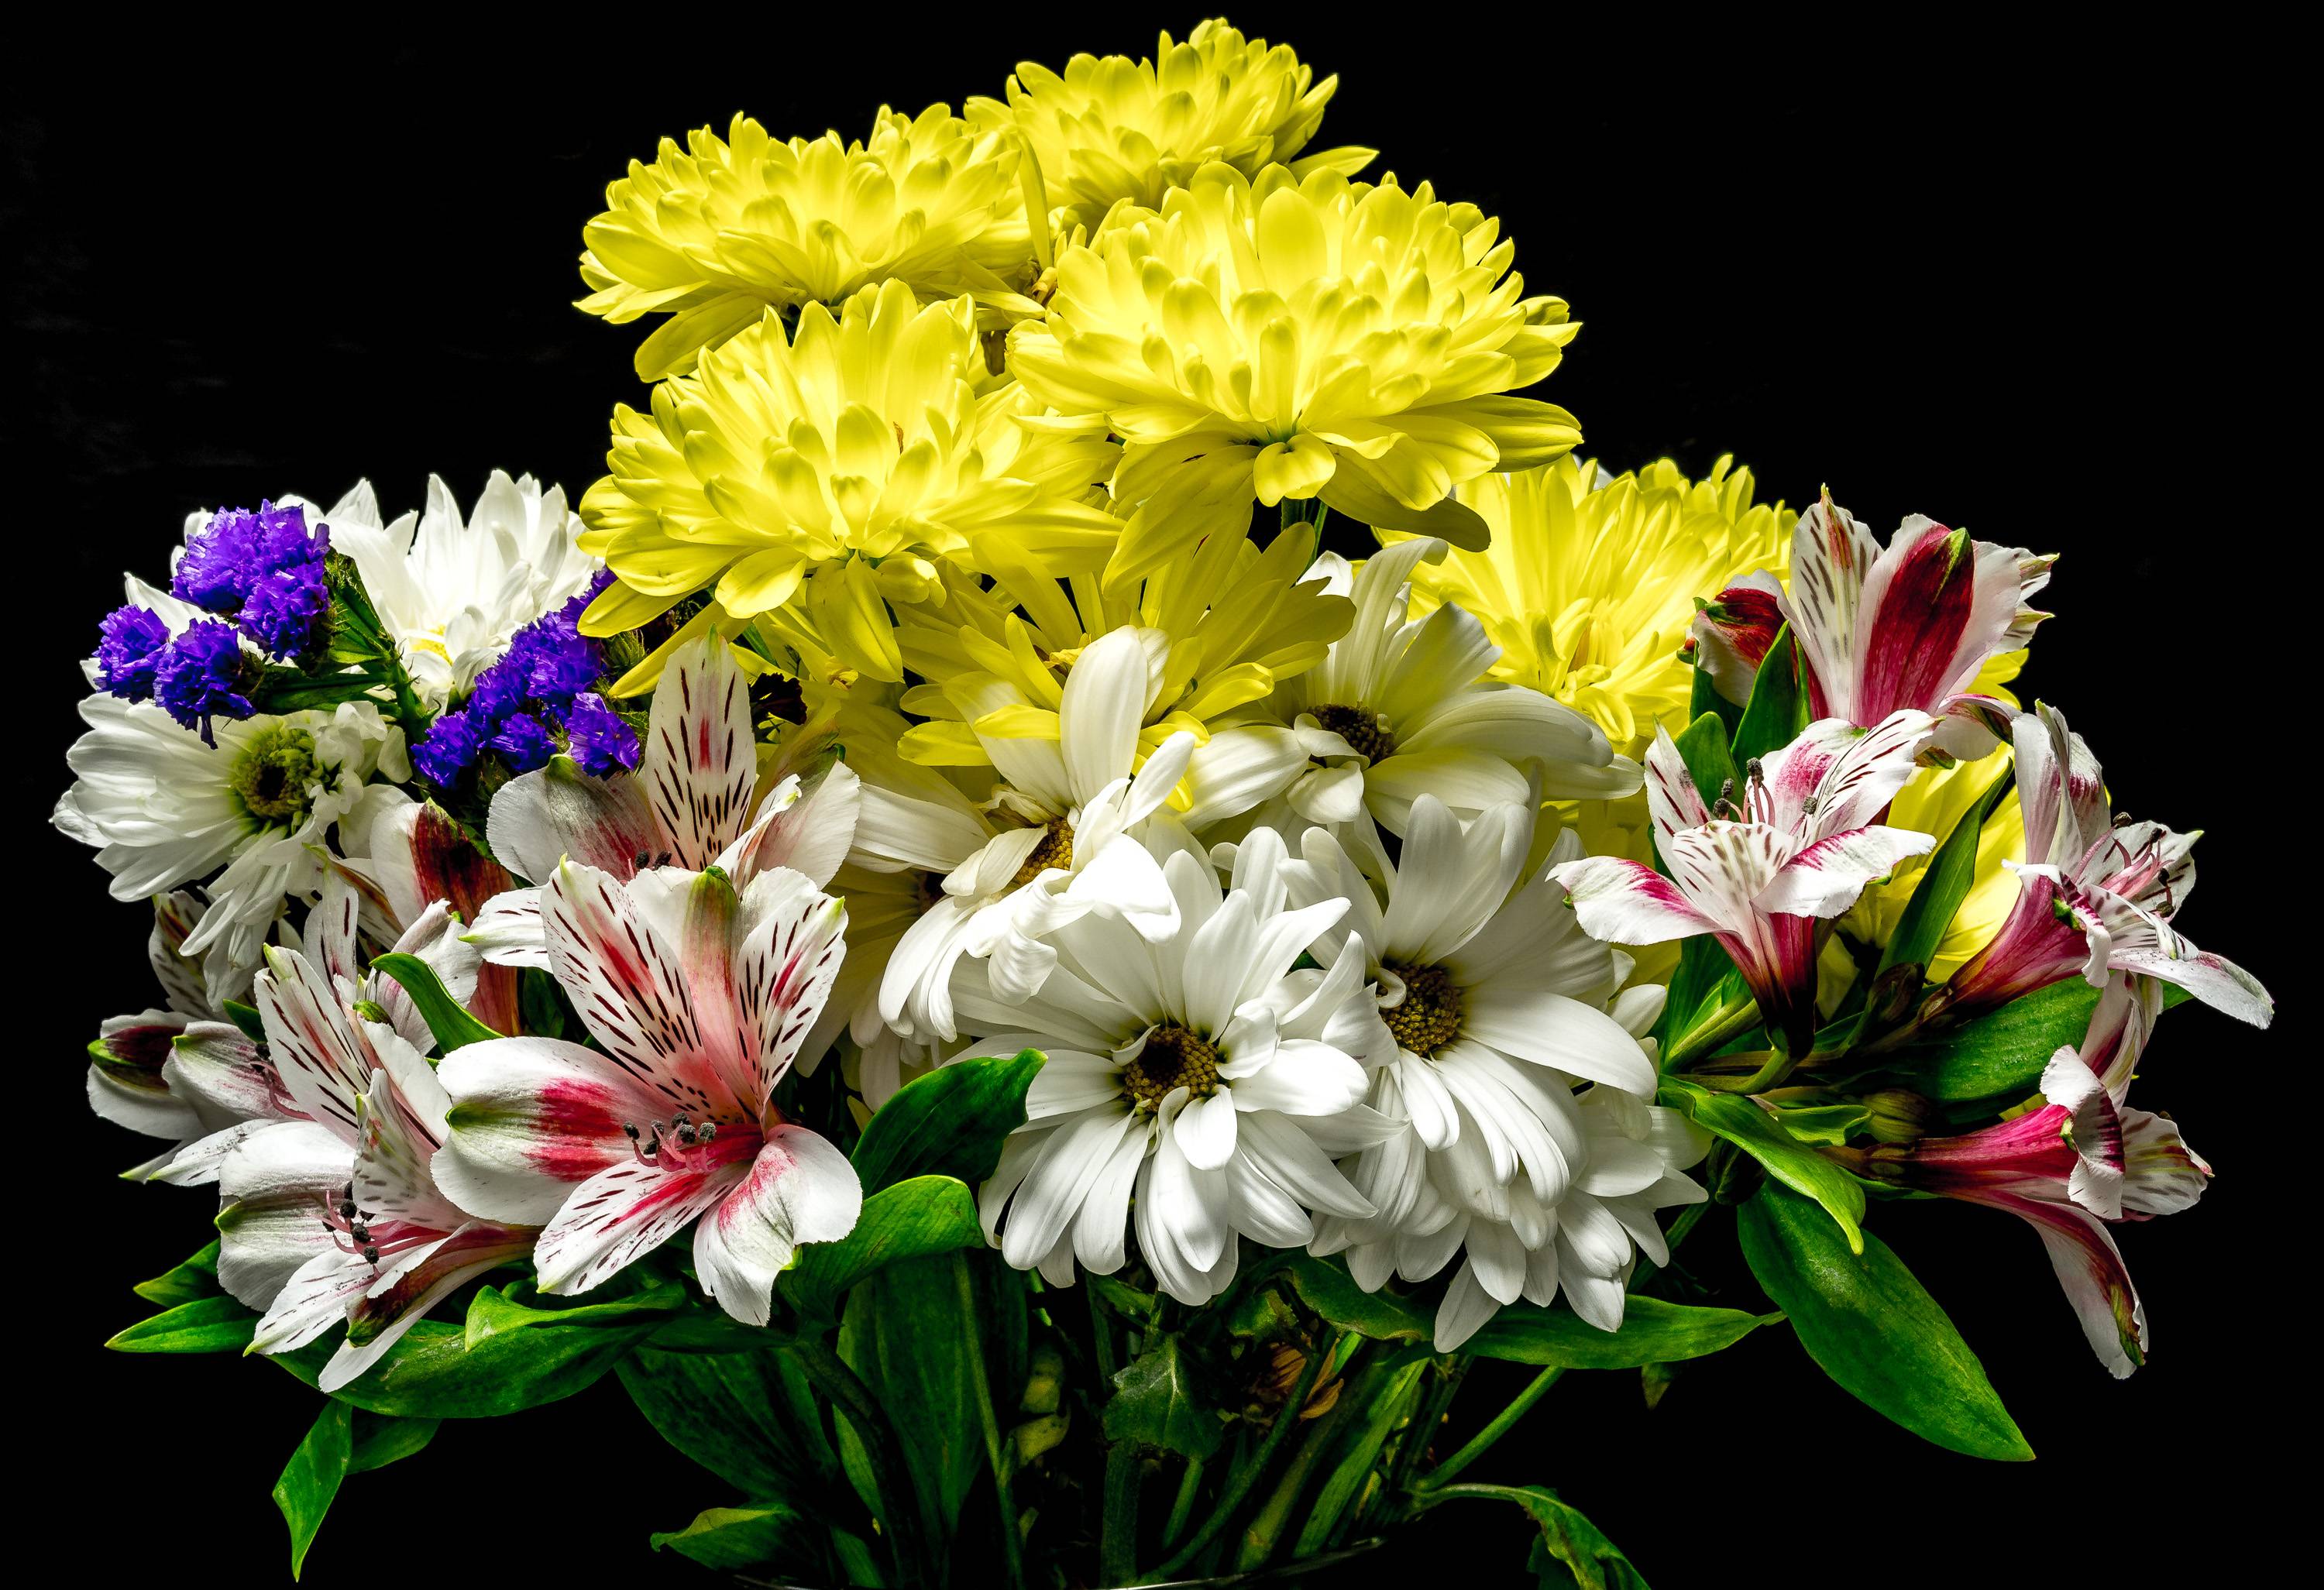 Фото бесплатно Цветы, черный фон, хризантемы